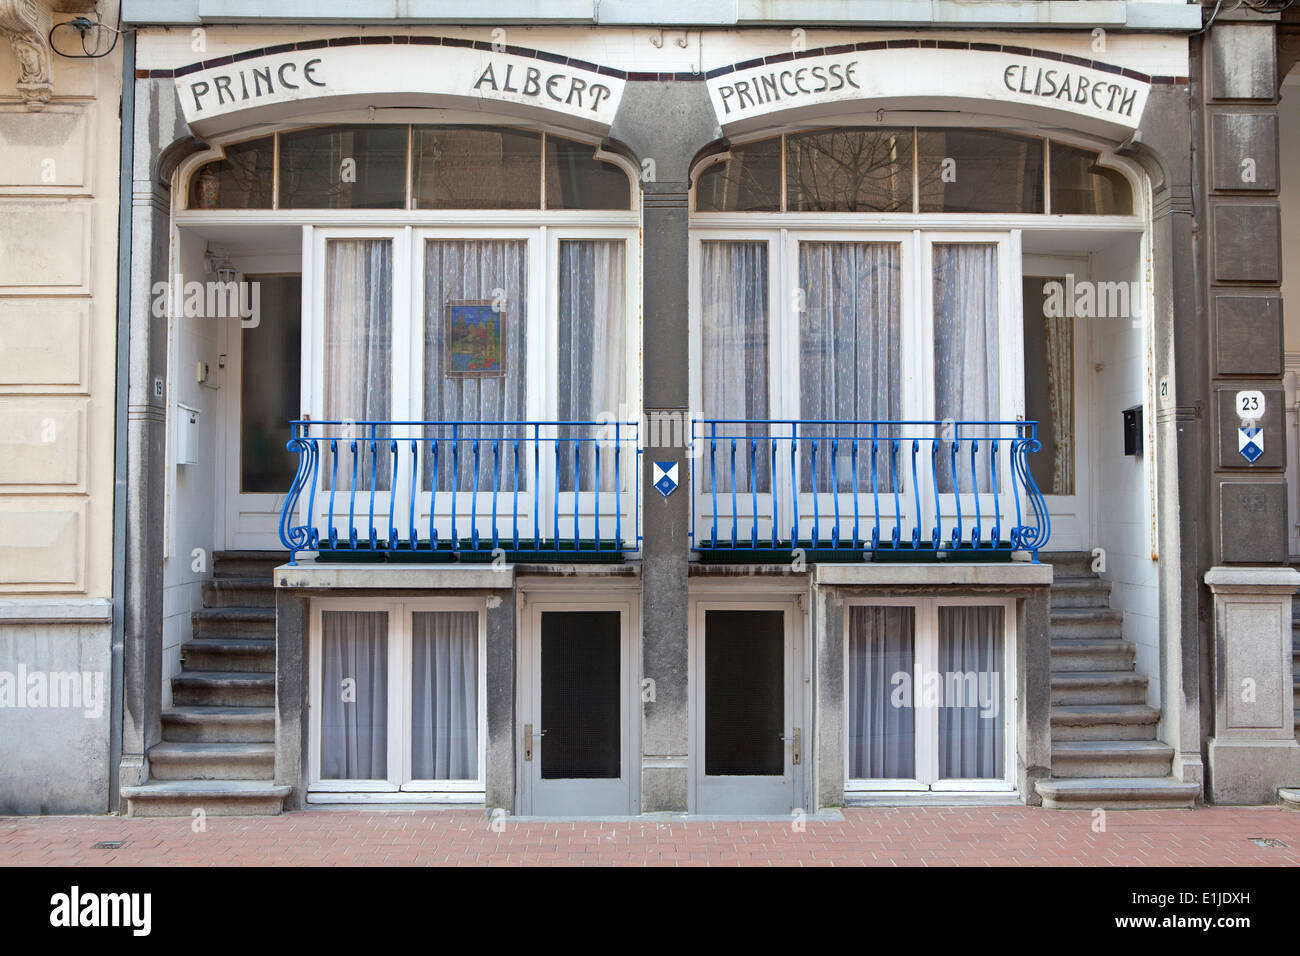 Prince Albert et Princesse Elisabeth Hotel, Ostende, Belgique Banque D'Images